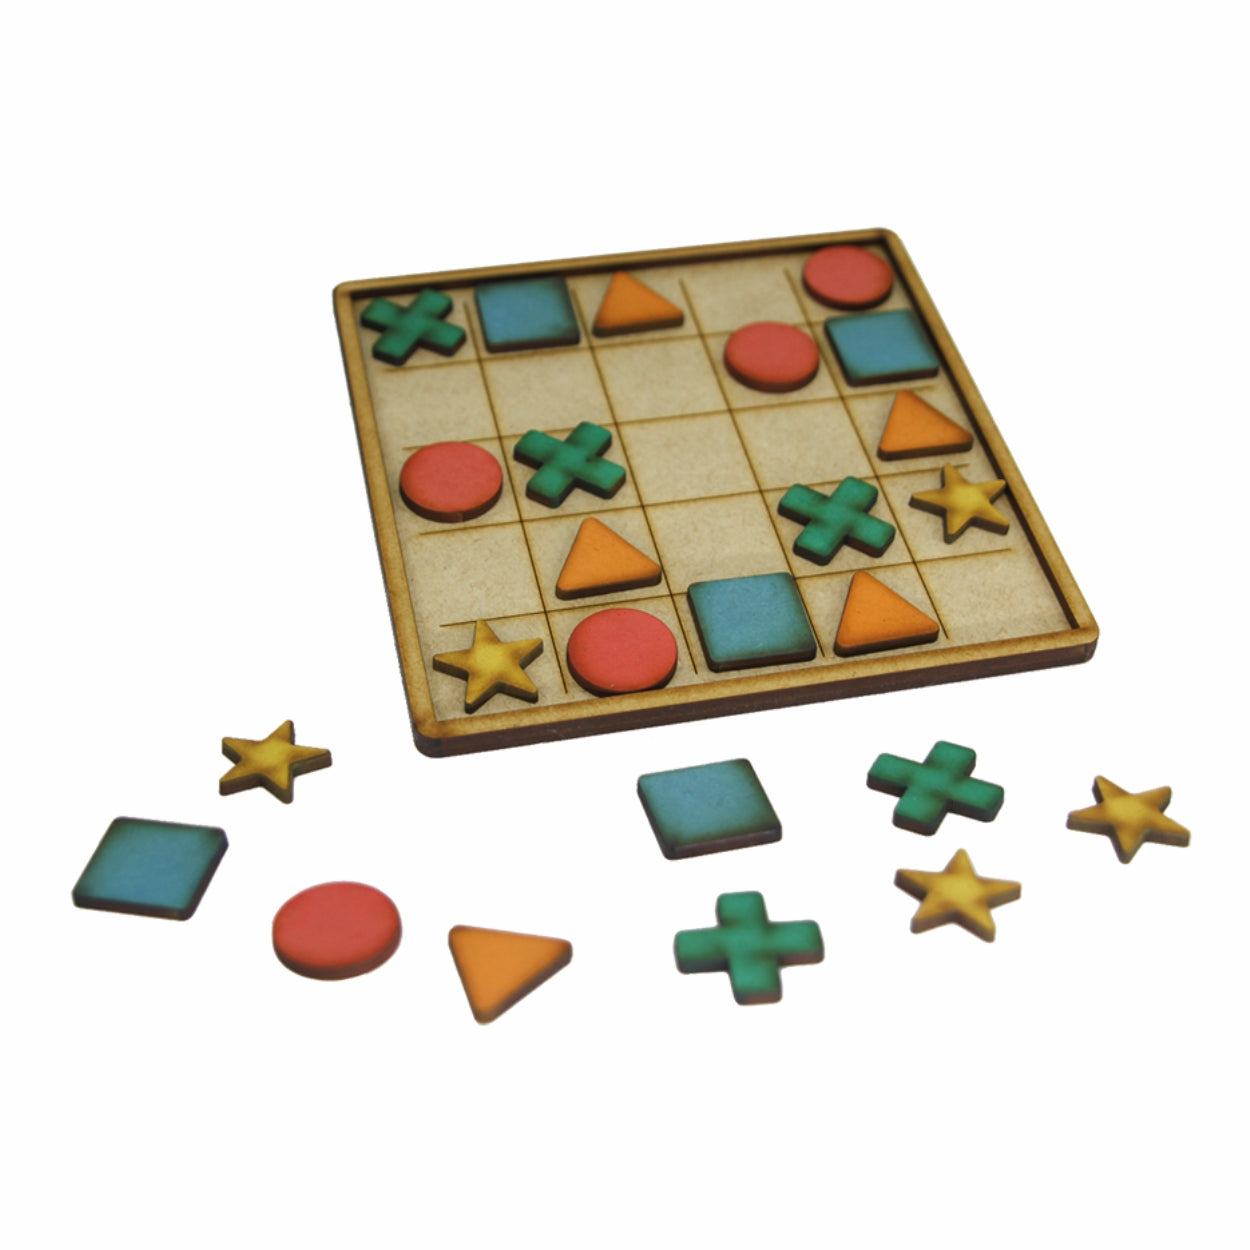 03 Jogos Sudoku Tabuleiro Classico Passatempo Educacional